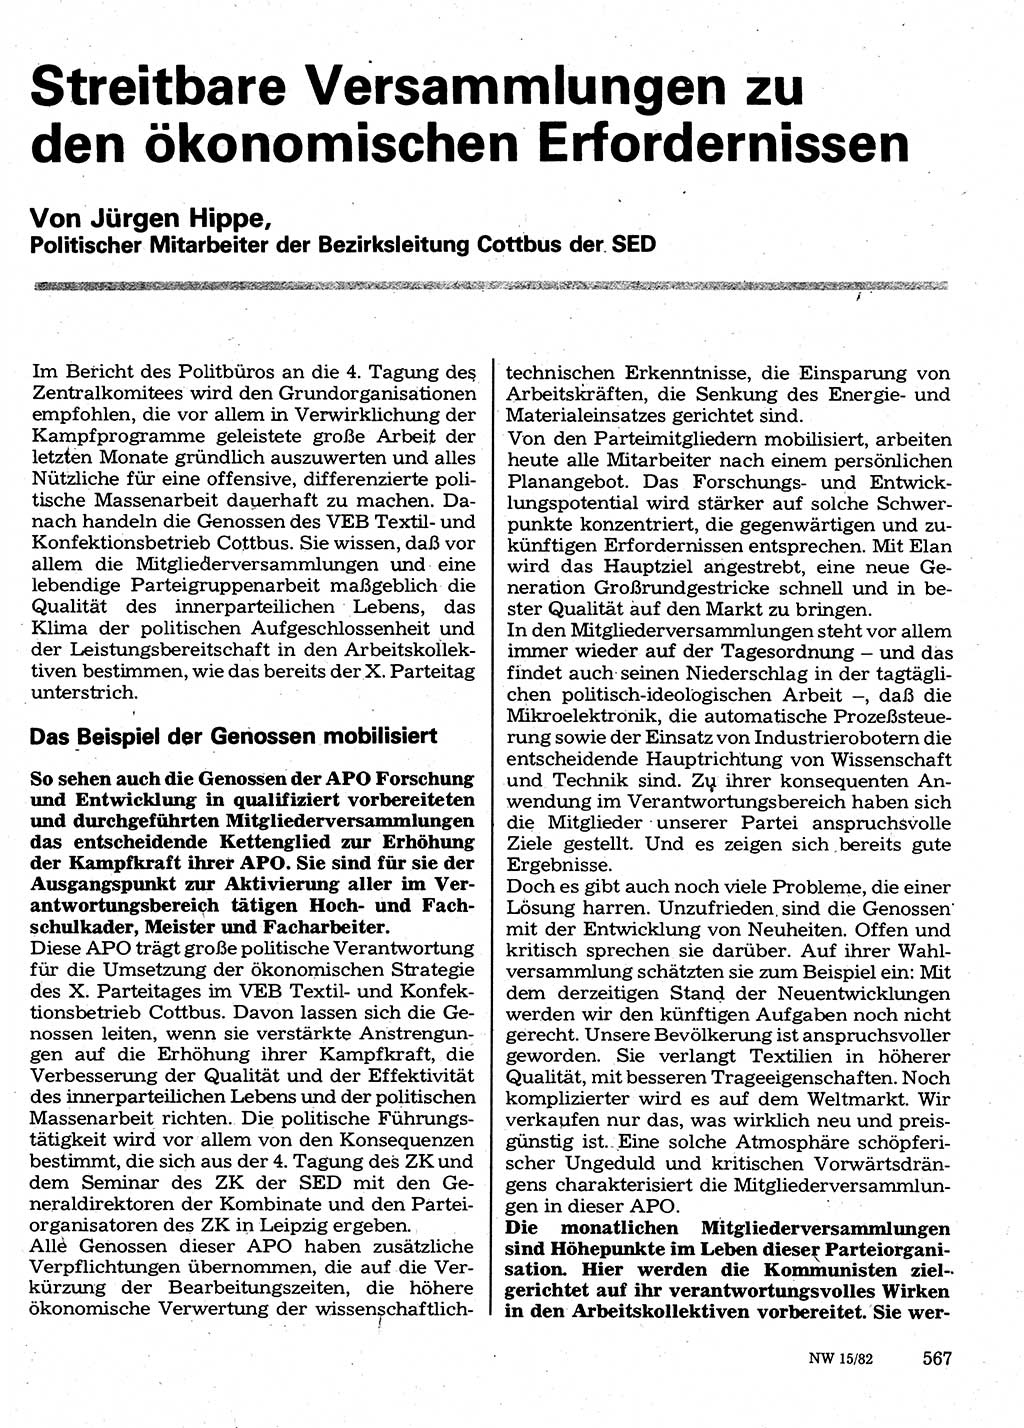 Neuer Weg (NW), Organ des Zentralkomitees (ZK) der SED (Sozialistische Einheitspartei Deutschlands) für Fragen des Parteilebens, 37. Jahrgang [Deutsche Demokratische Republik (DDR)] 1982, Seite 567 (NW ZK SED DDR 1982, S. 567)